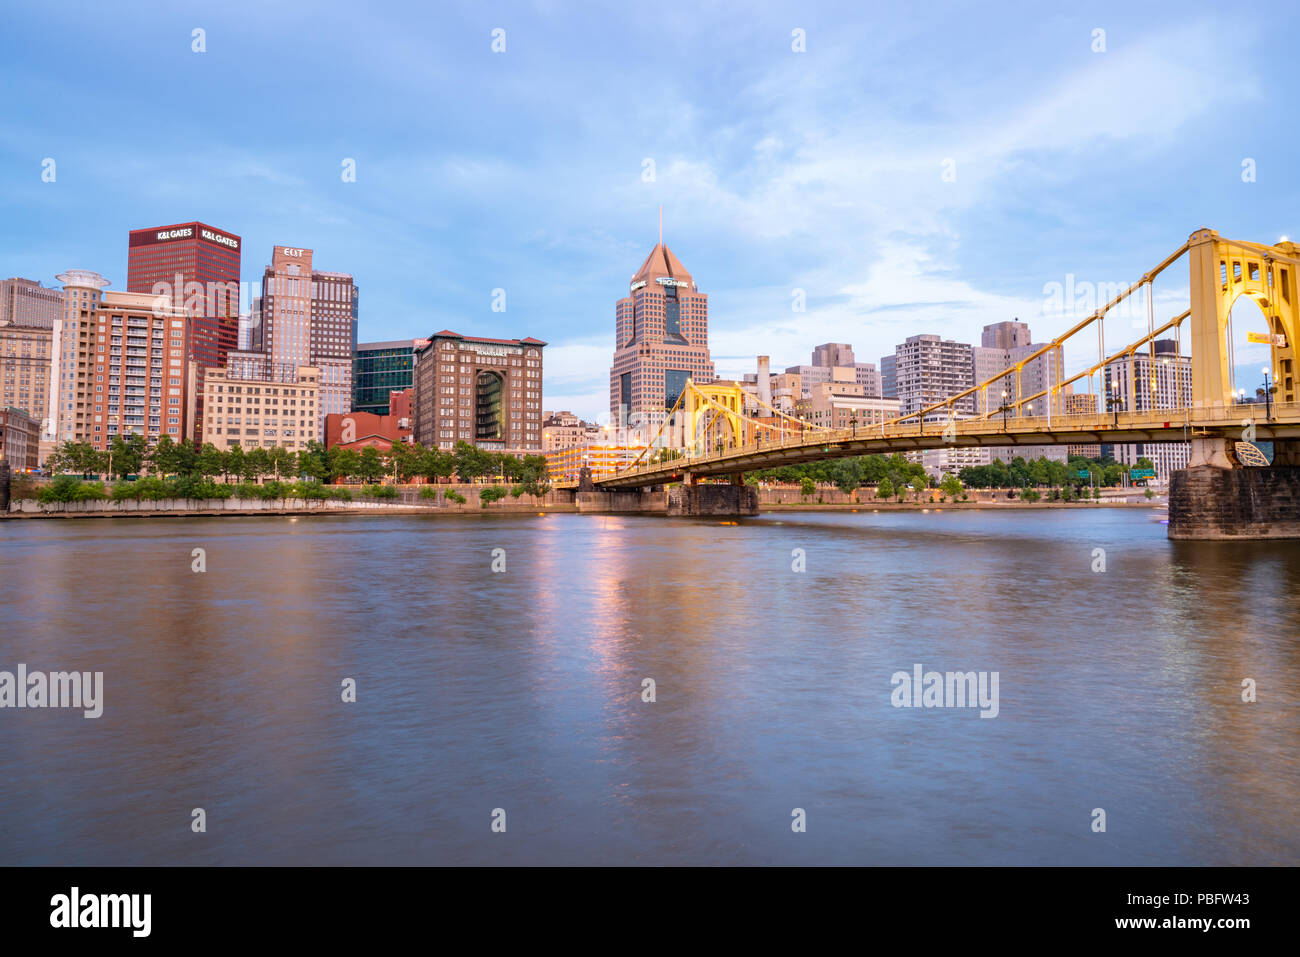 PITTSBURGH, PA - 16 juin 2018 : Pittsburgh, Pennsylvanie skyline le long de la rivière Allegheny à partir de la rive nord du parc Riverfront Banque D'Images